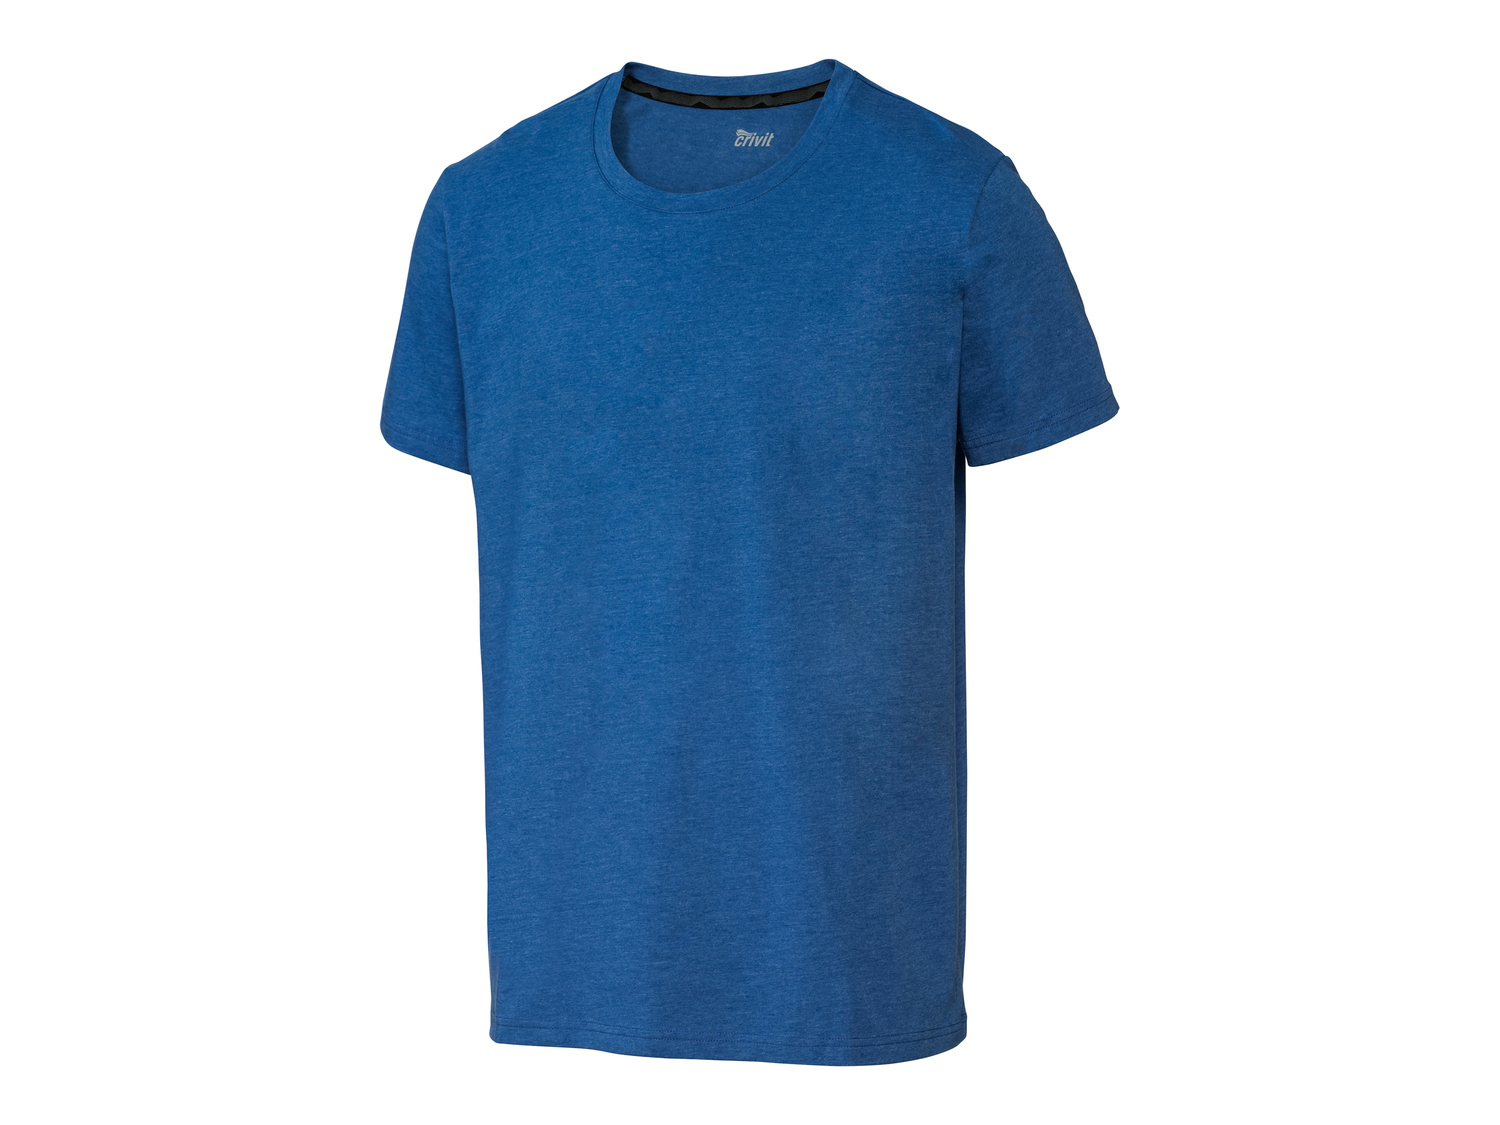 T-shirt sportiva da uomo Crivit, prezzo 4.99 € 
Misure: S-XL
Taglie disponibili

Caratteristiche

- ...